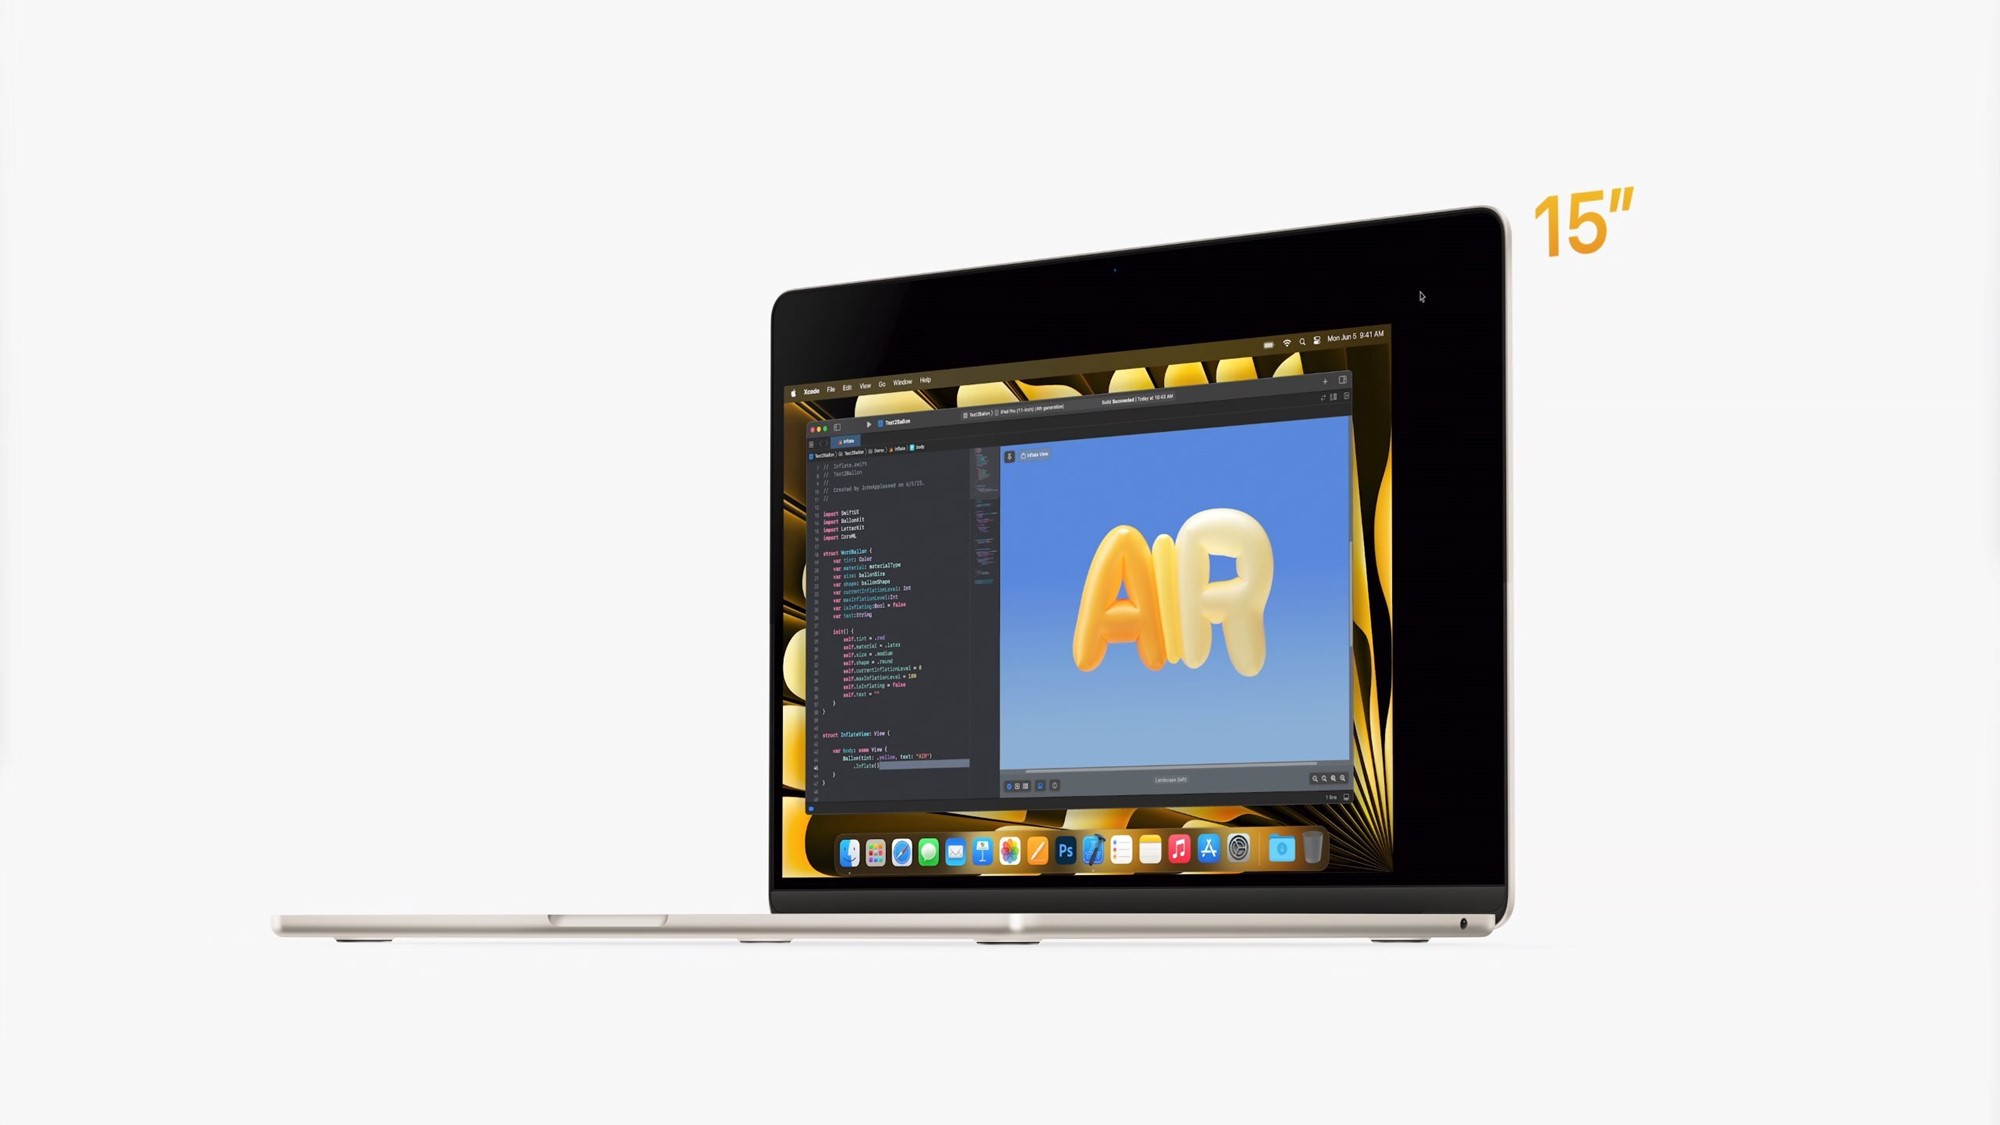 MacBook Air 15 inch chính thức: Mỏng nhất thế giới, chip Apple M2, pin 18 giờ, giá 1299 USD - Ảnh 1.